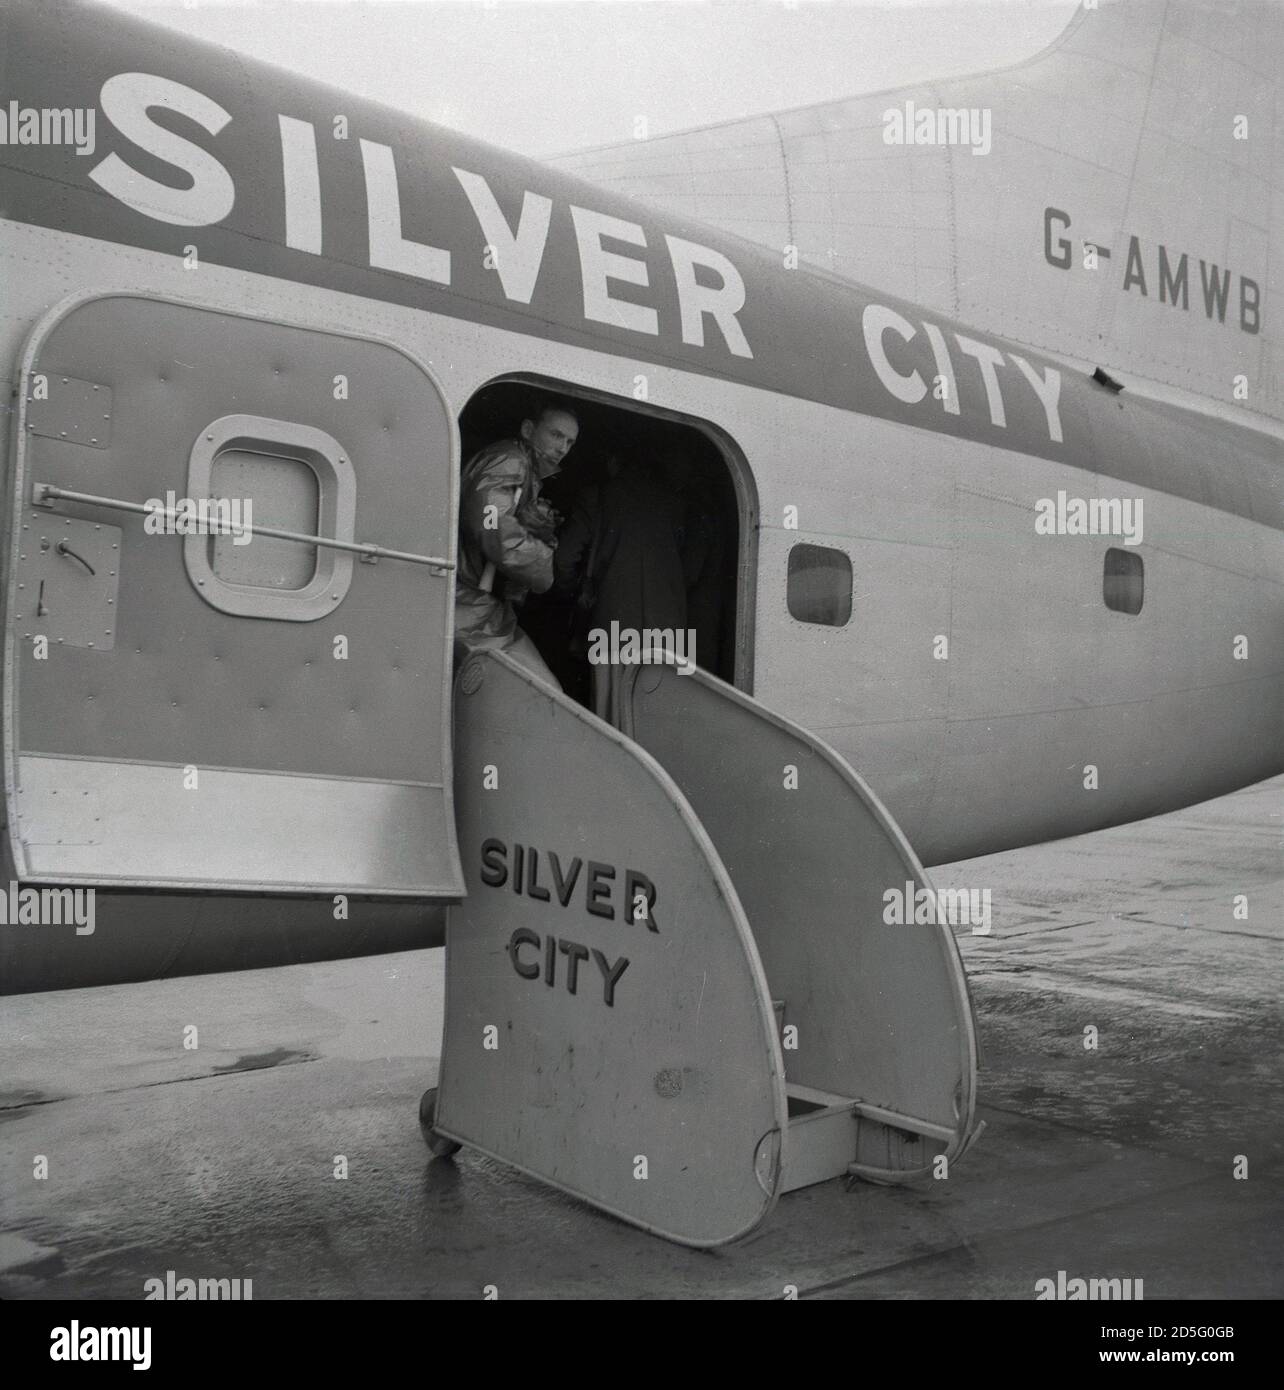 Anni '50, storico, un Bristol Superfreighter MK32 aeromobili di Silver City Airways, un aereo a due motori, un aereo di linea e un freighter parcheggiato su asfalto con porta posteriore aperta. Fondata nel 1946, il nome "Silver City" proveniva dalla società madre originaria della compagnia aerea, la Zinc Corporation, che aveva un importante deposito di argento e miniere in Australia. Nel 1948, British Aviation Services ha preso il controllo della compagnia aerea e nel mese di luglio ha avuto luogo il primo servizio di traghetto aereo al mondo attraverso la Manica. Nel 1953 fu introdotto il Superperfighter di Bristol e nel 1954 la compagnia aerea fu rilevata dalla compagnia di navigazione P & O. Foto Stock